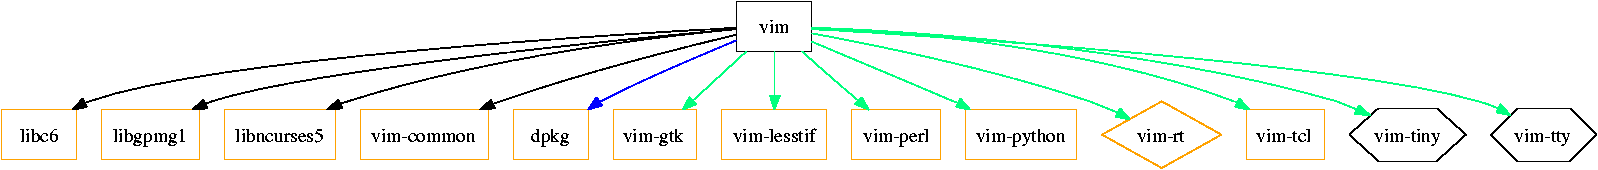 apt-cache dotty vim - Beispiel